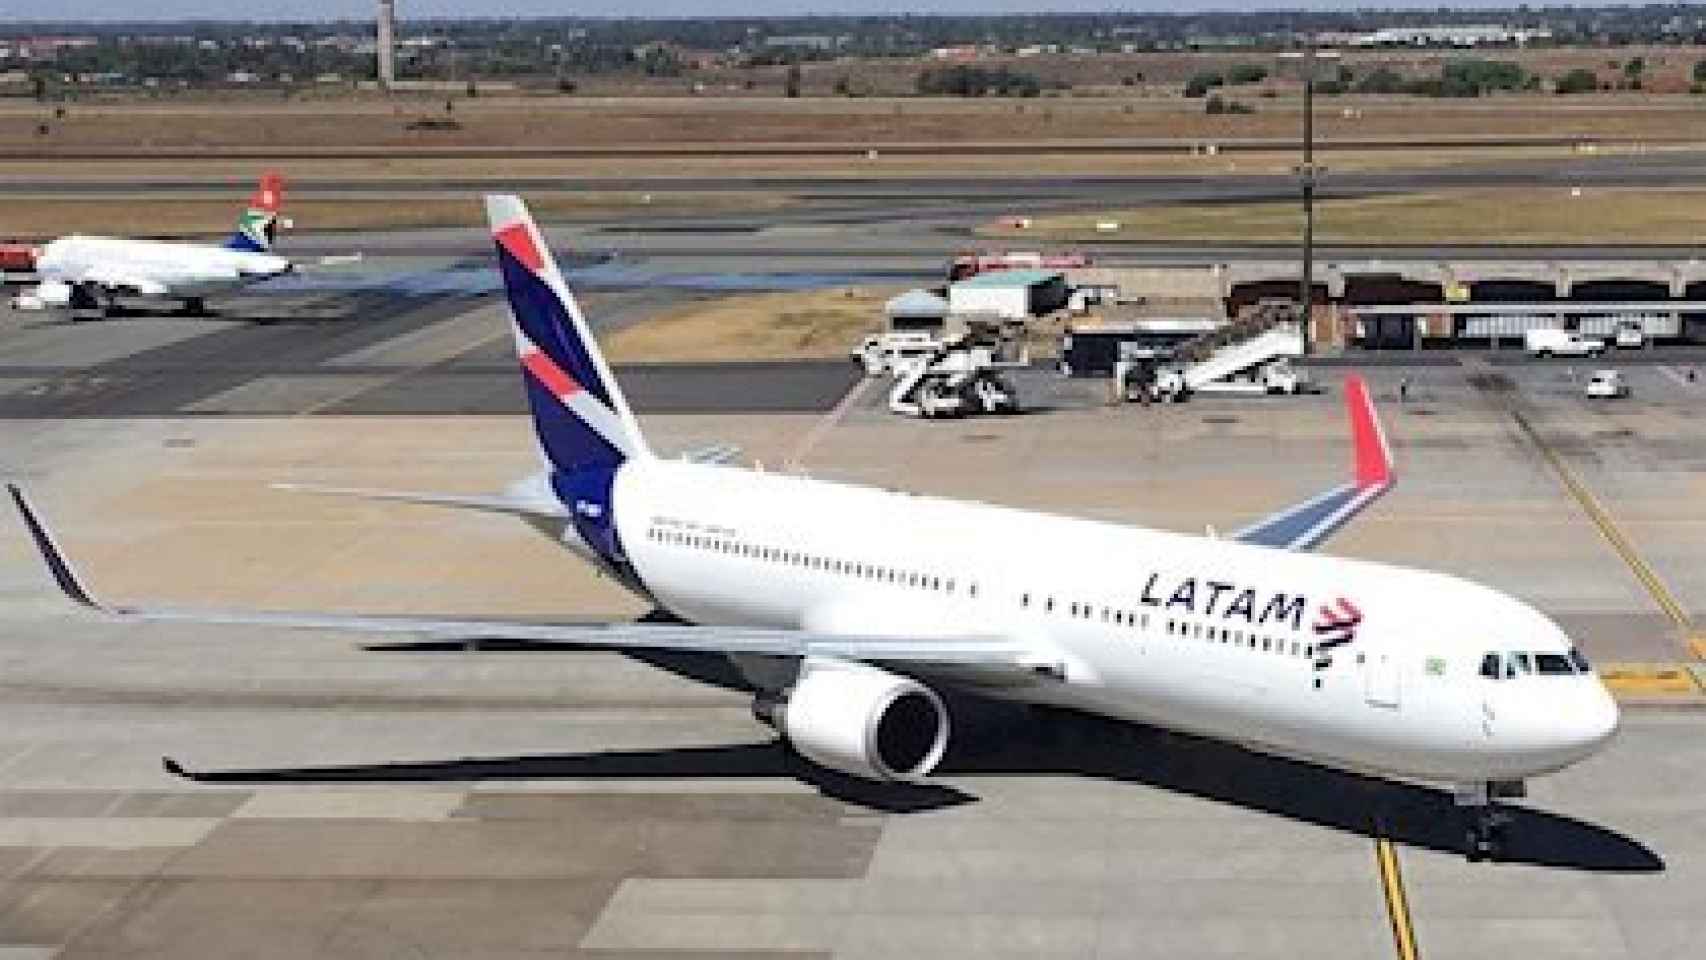 La aerolínea Latam se declaró en bancarrota en EEUU el 26 de mayo por el Covid